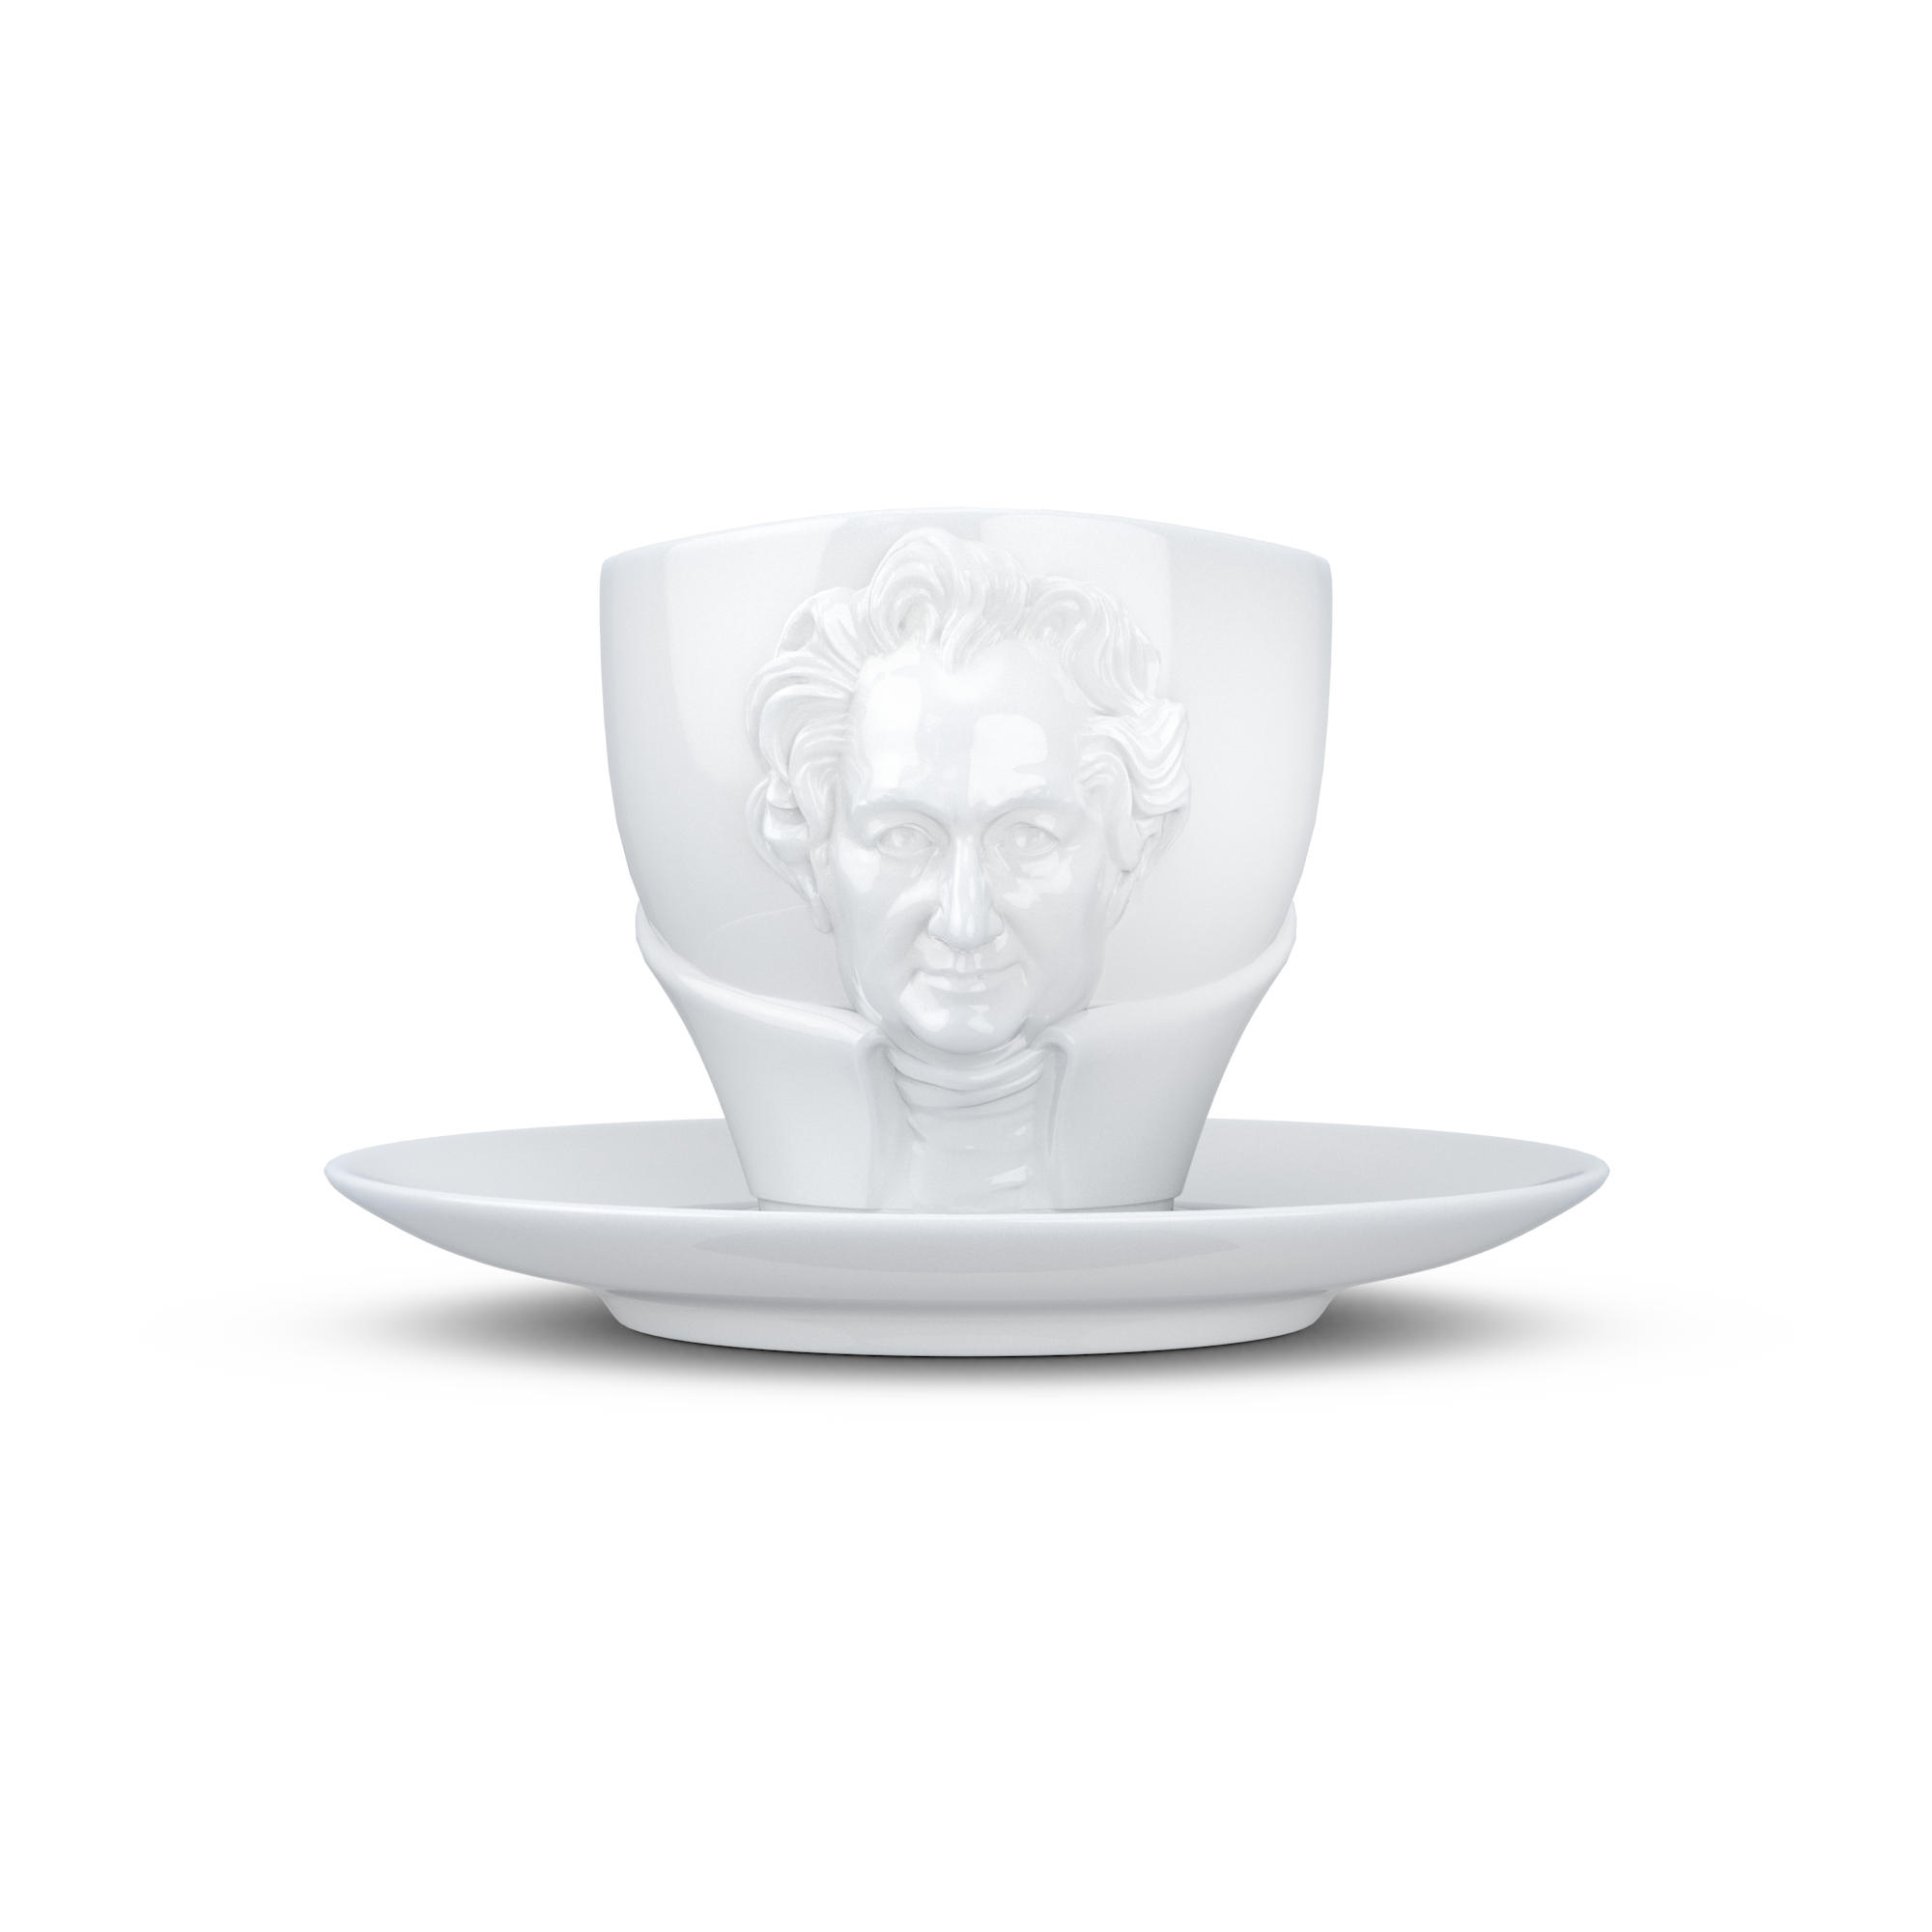 FIFTYEIGHT PRODUCTS Goethe Talent Porzellan Tasse mit Unterteller 